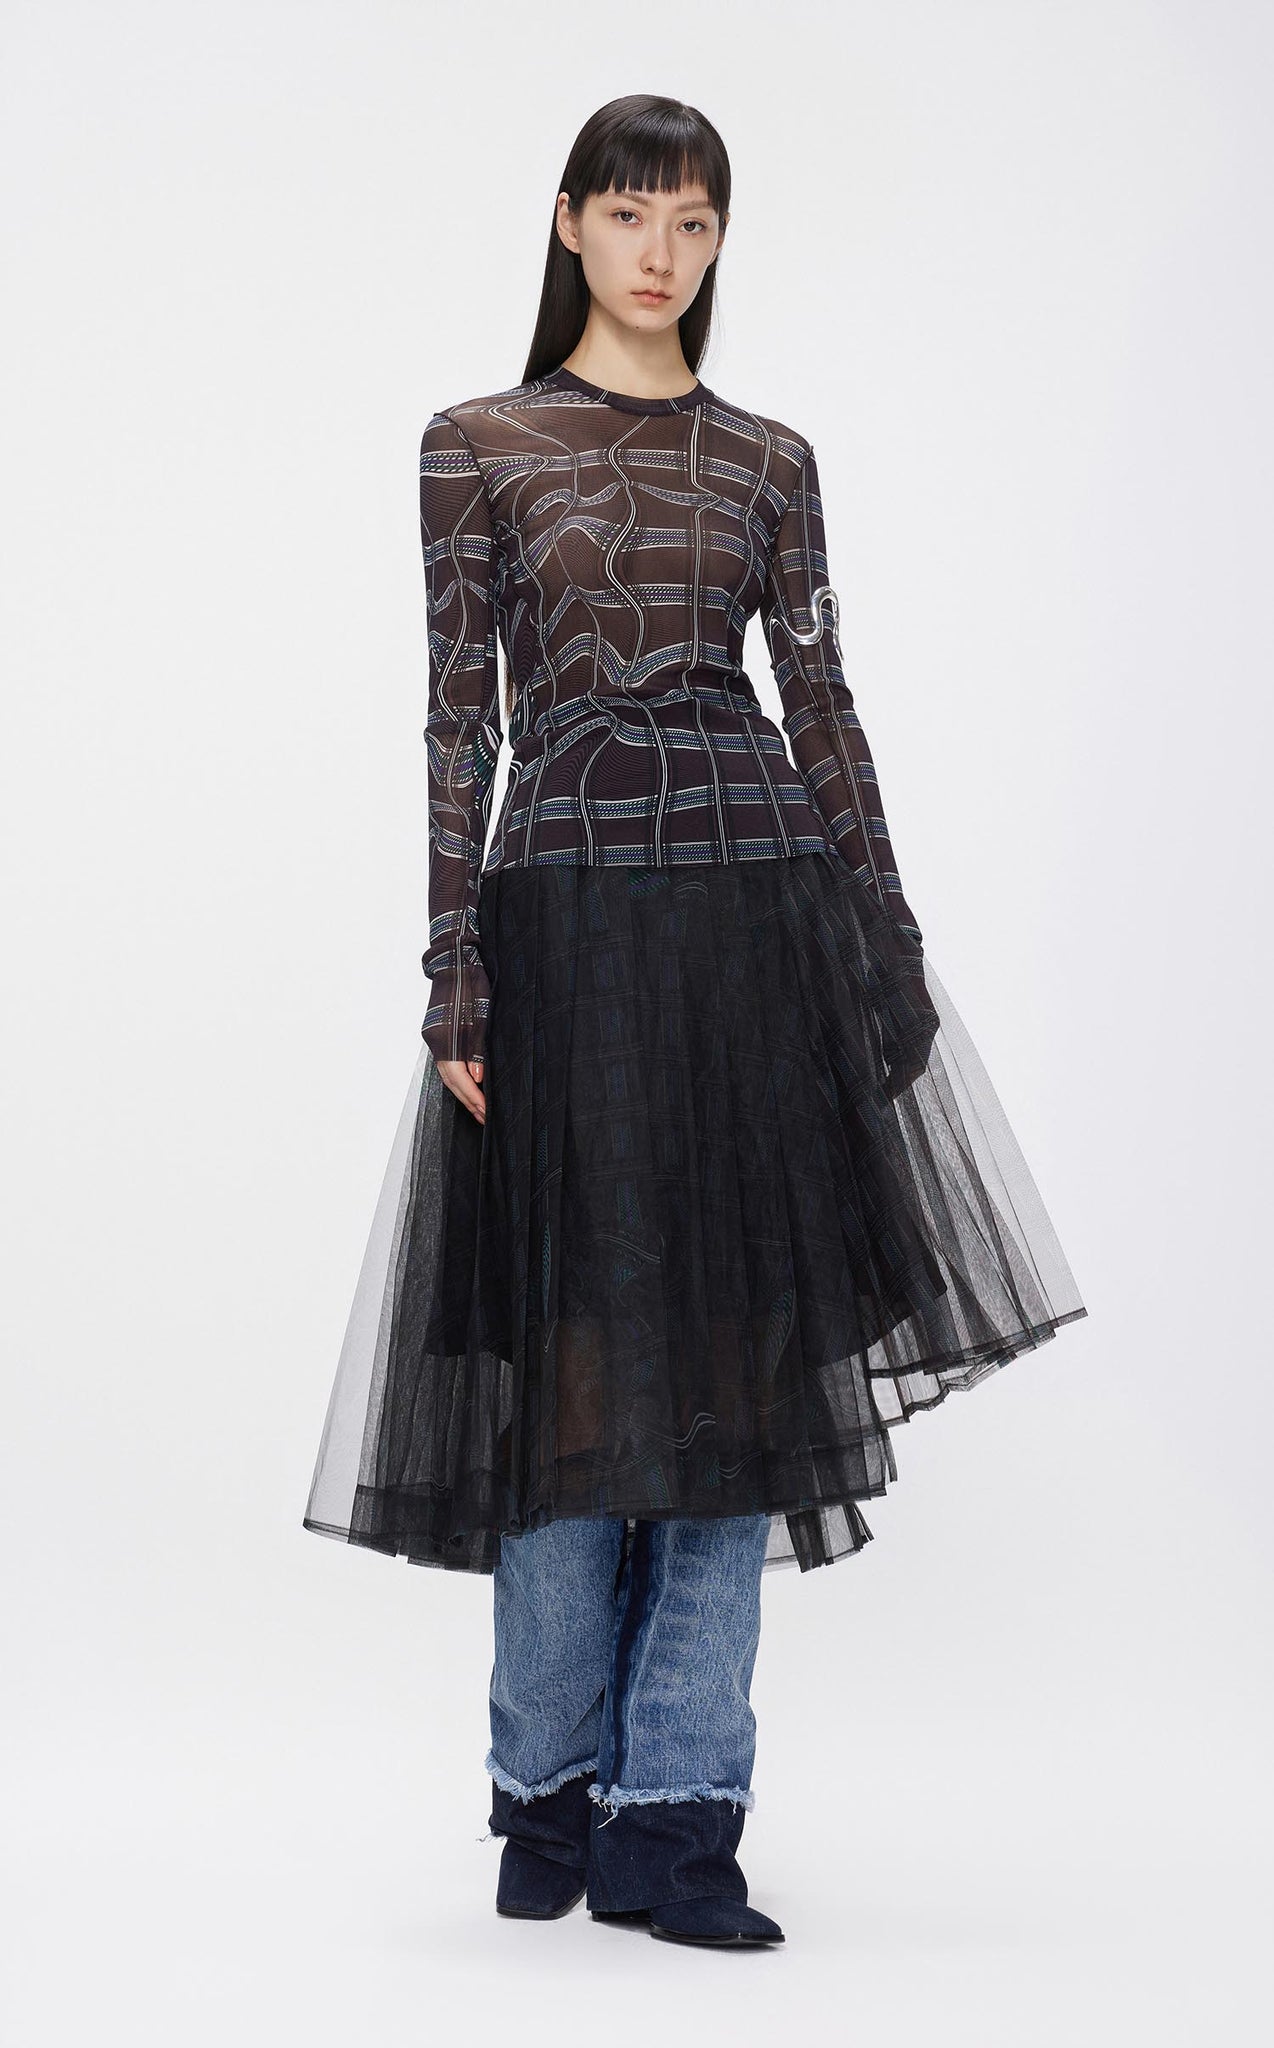 Skirts / JNBY Asymmetric Full Print Mesh Skirt